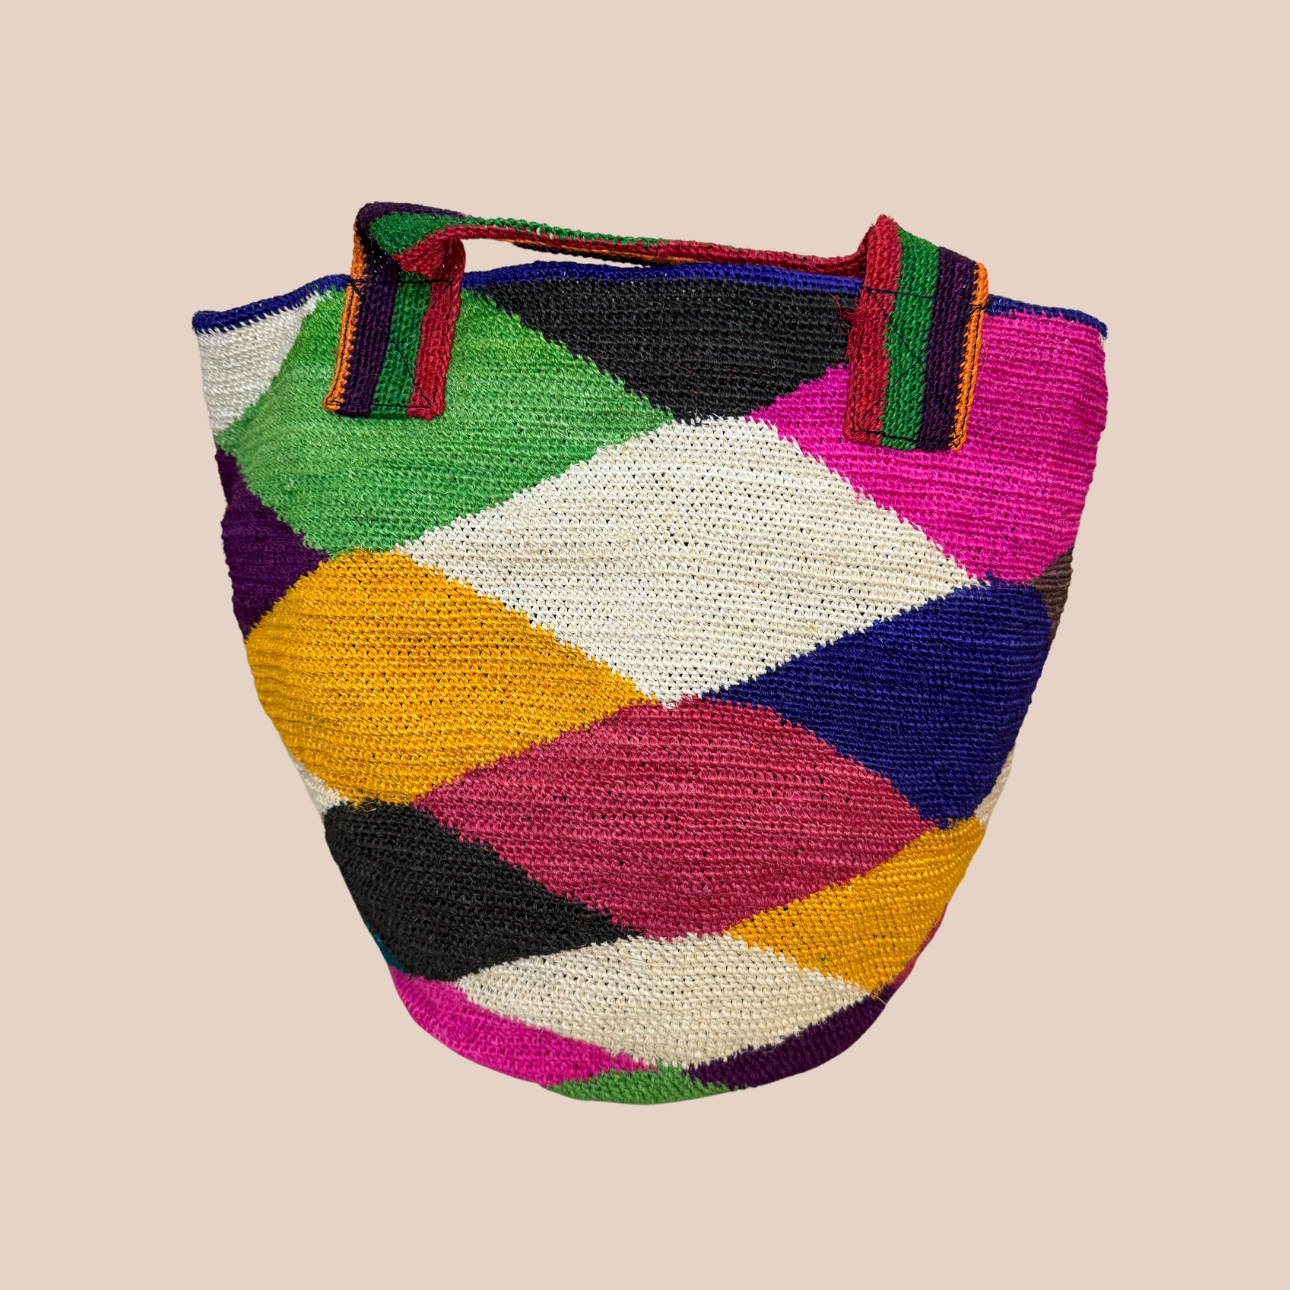 Image du sac IKAL de Maison Badigo, sac en fibres naturelles de cactus multicolore unique et tendance